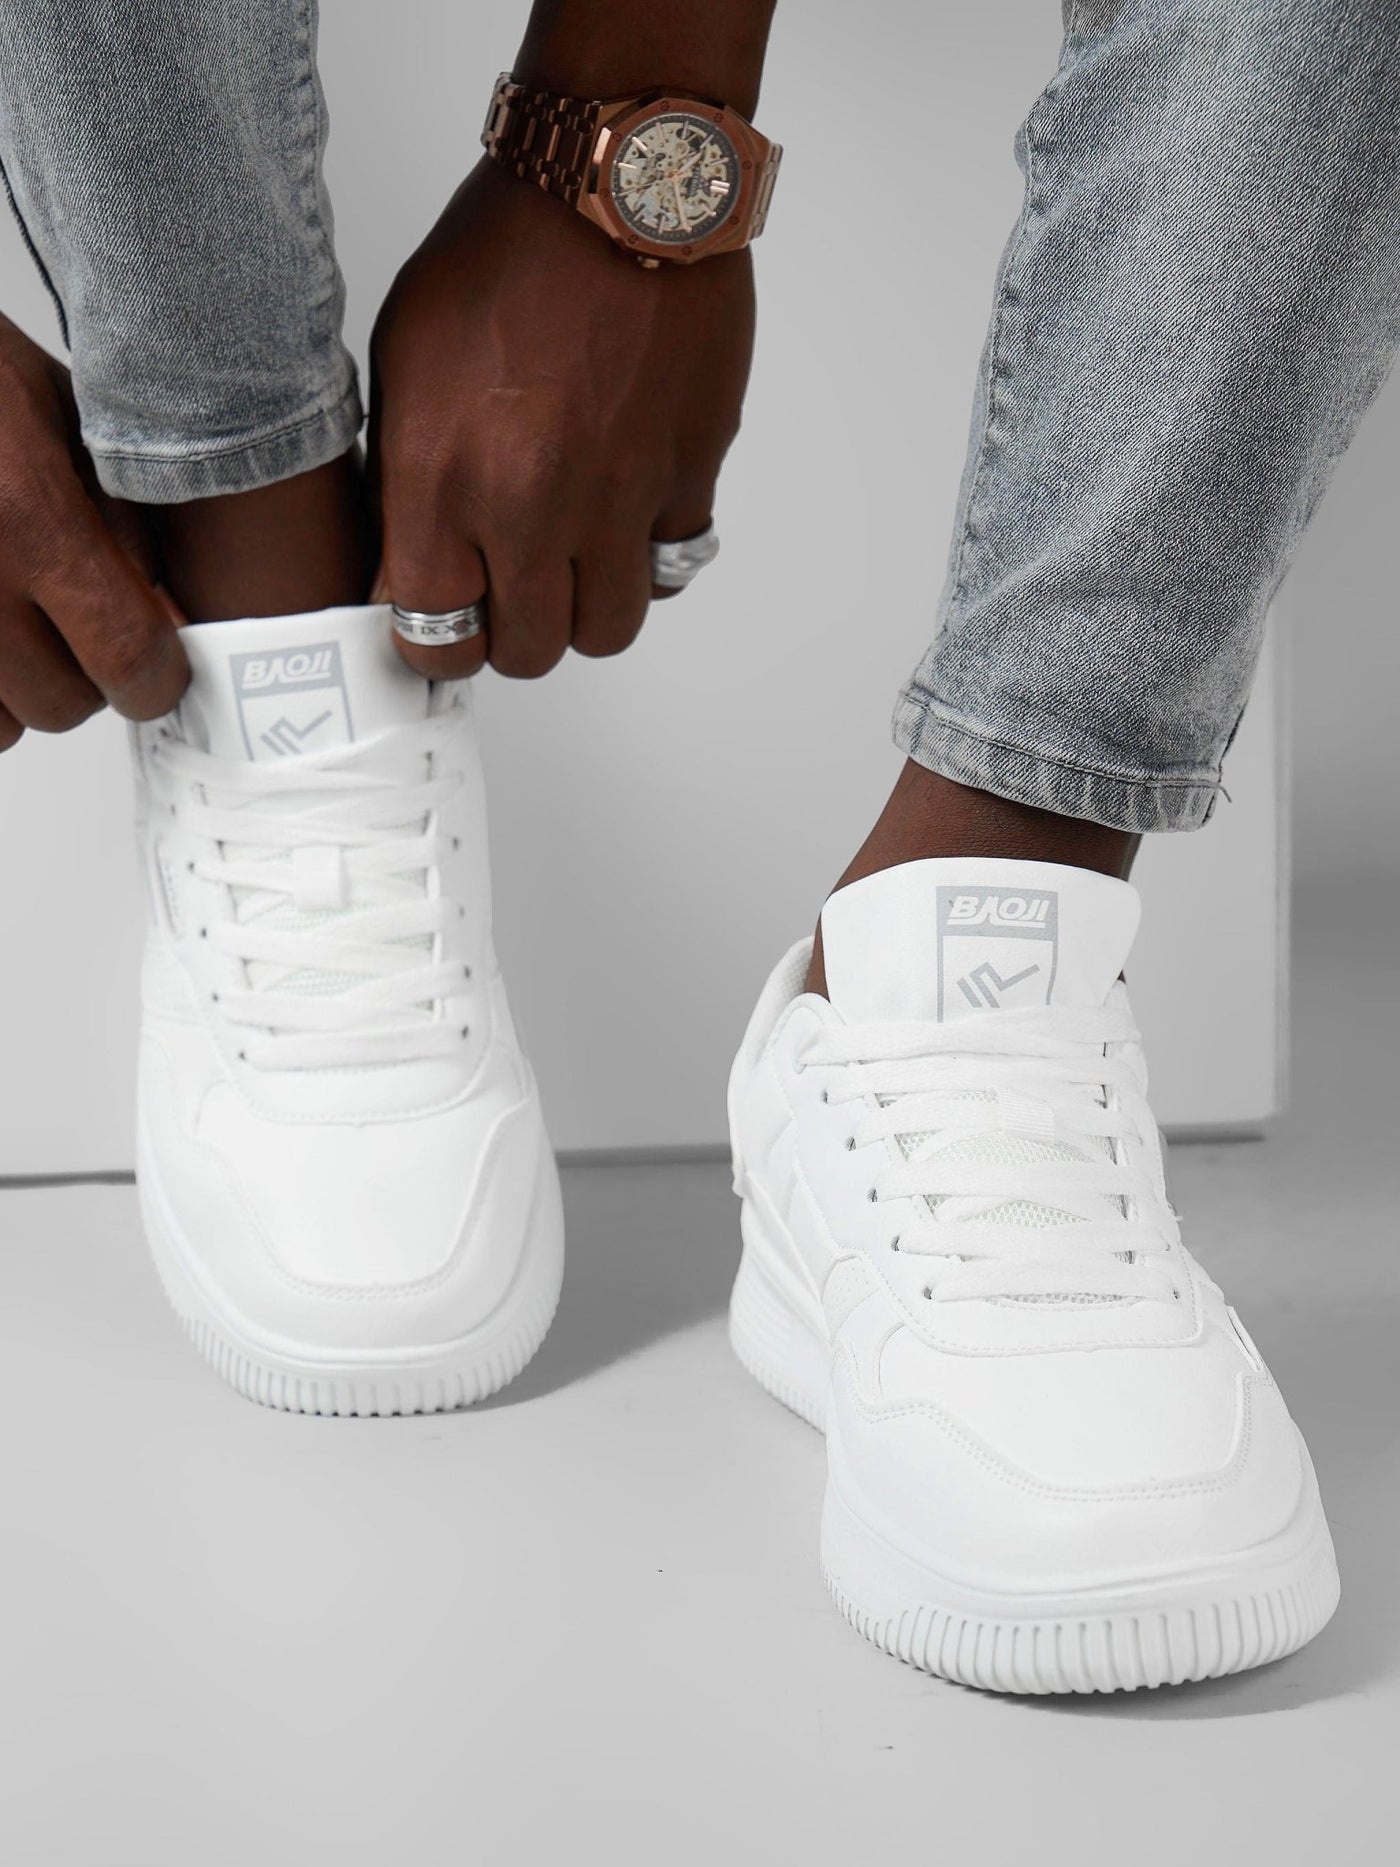 Ziatu Men's Classic Style Sneakers - White - Shopzetu